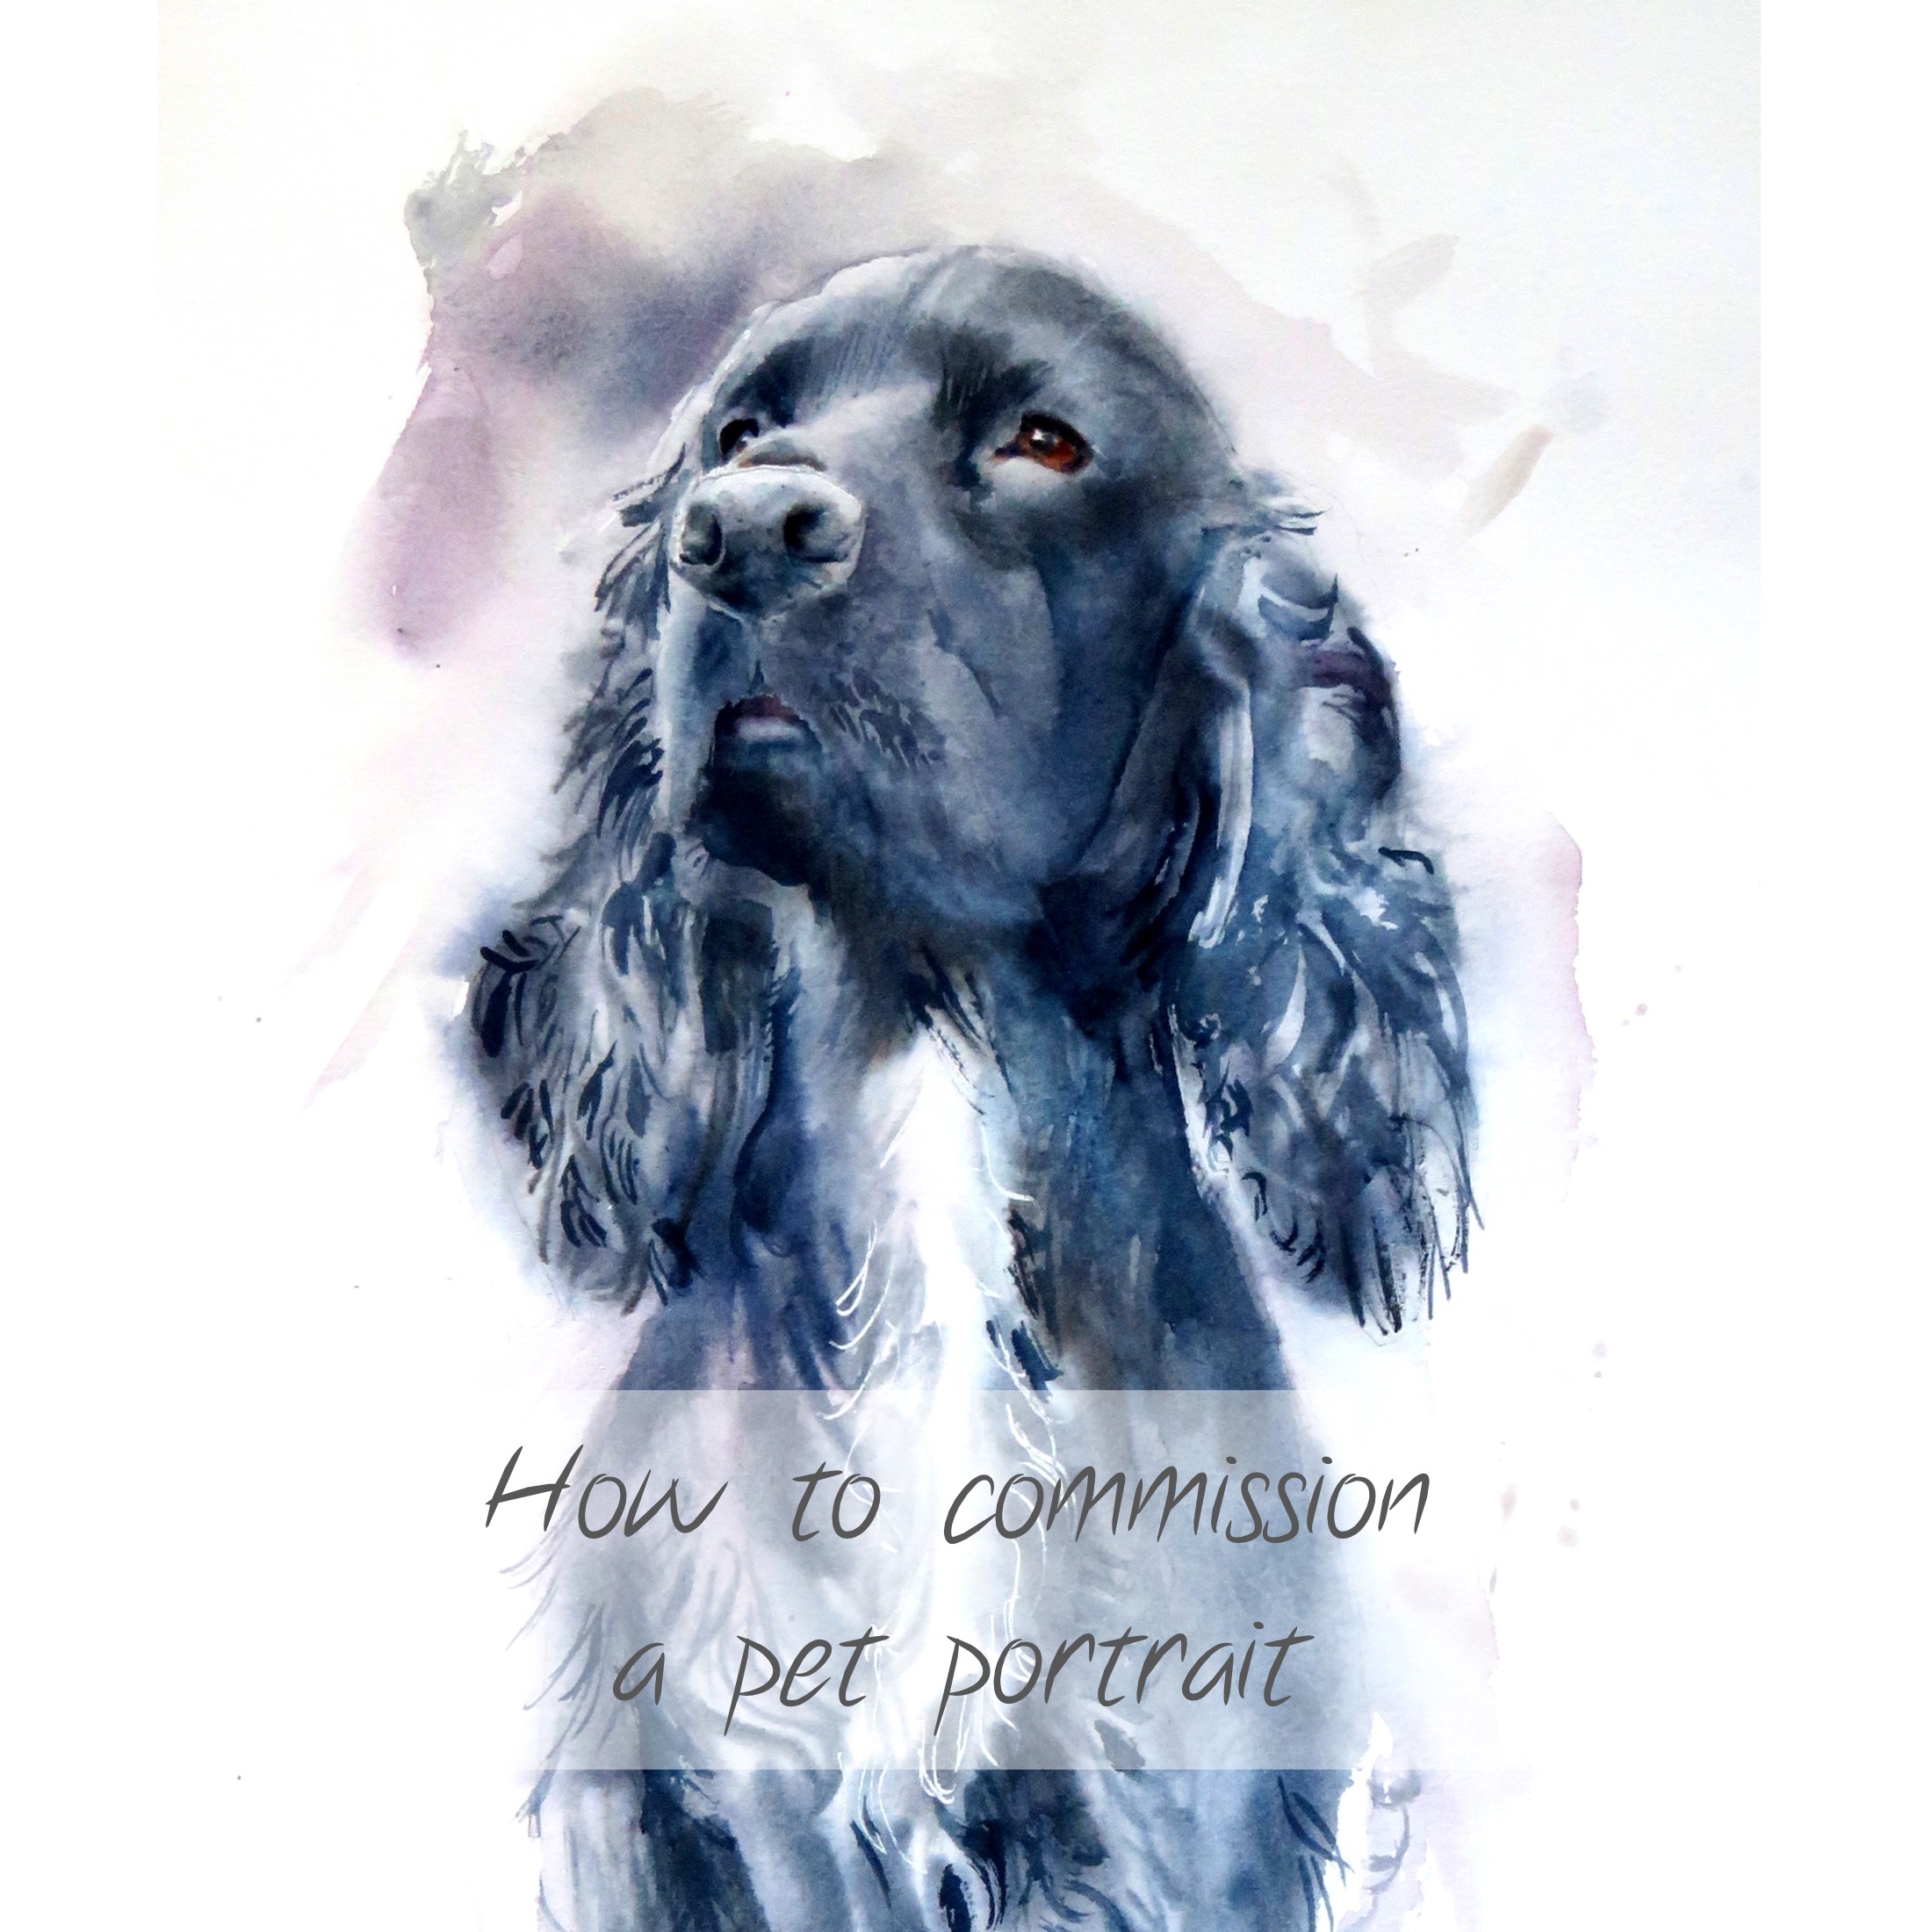 How to commission a pet portrait